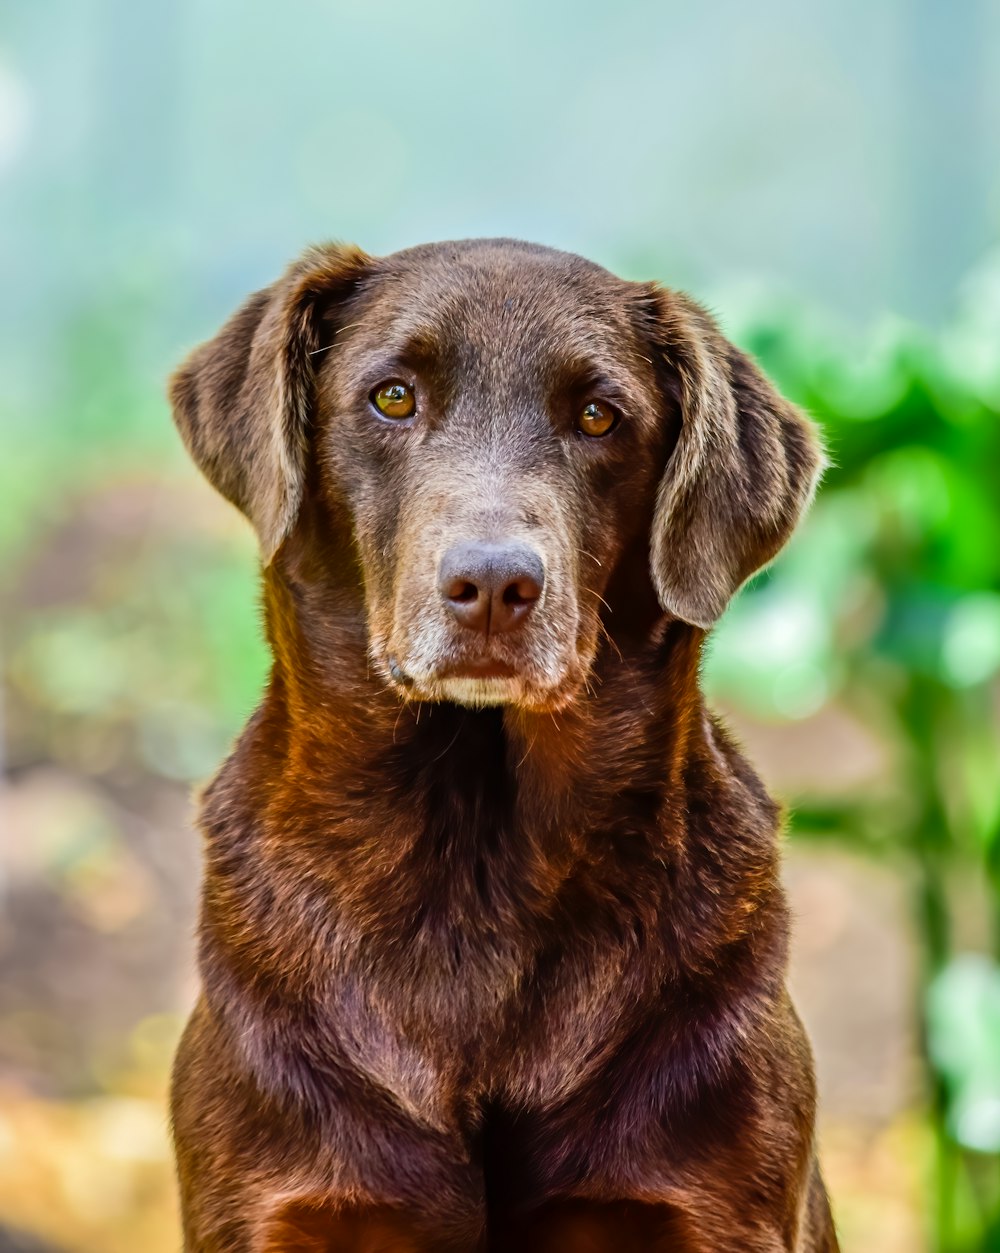 brown short coated dog in tilt shift lens